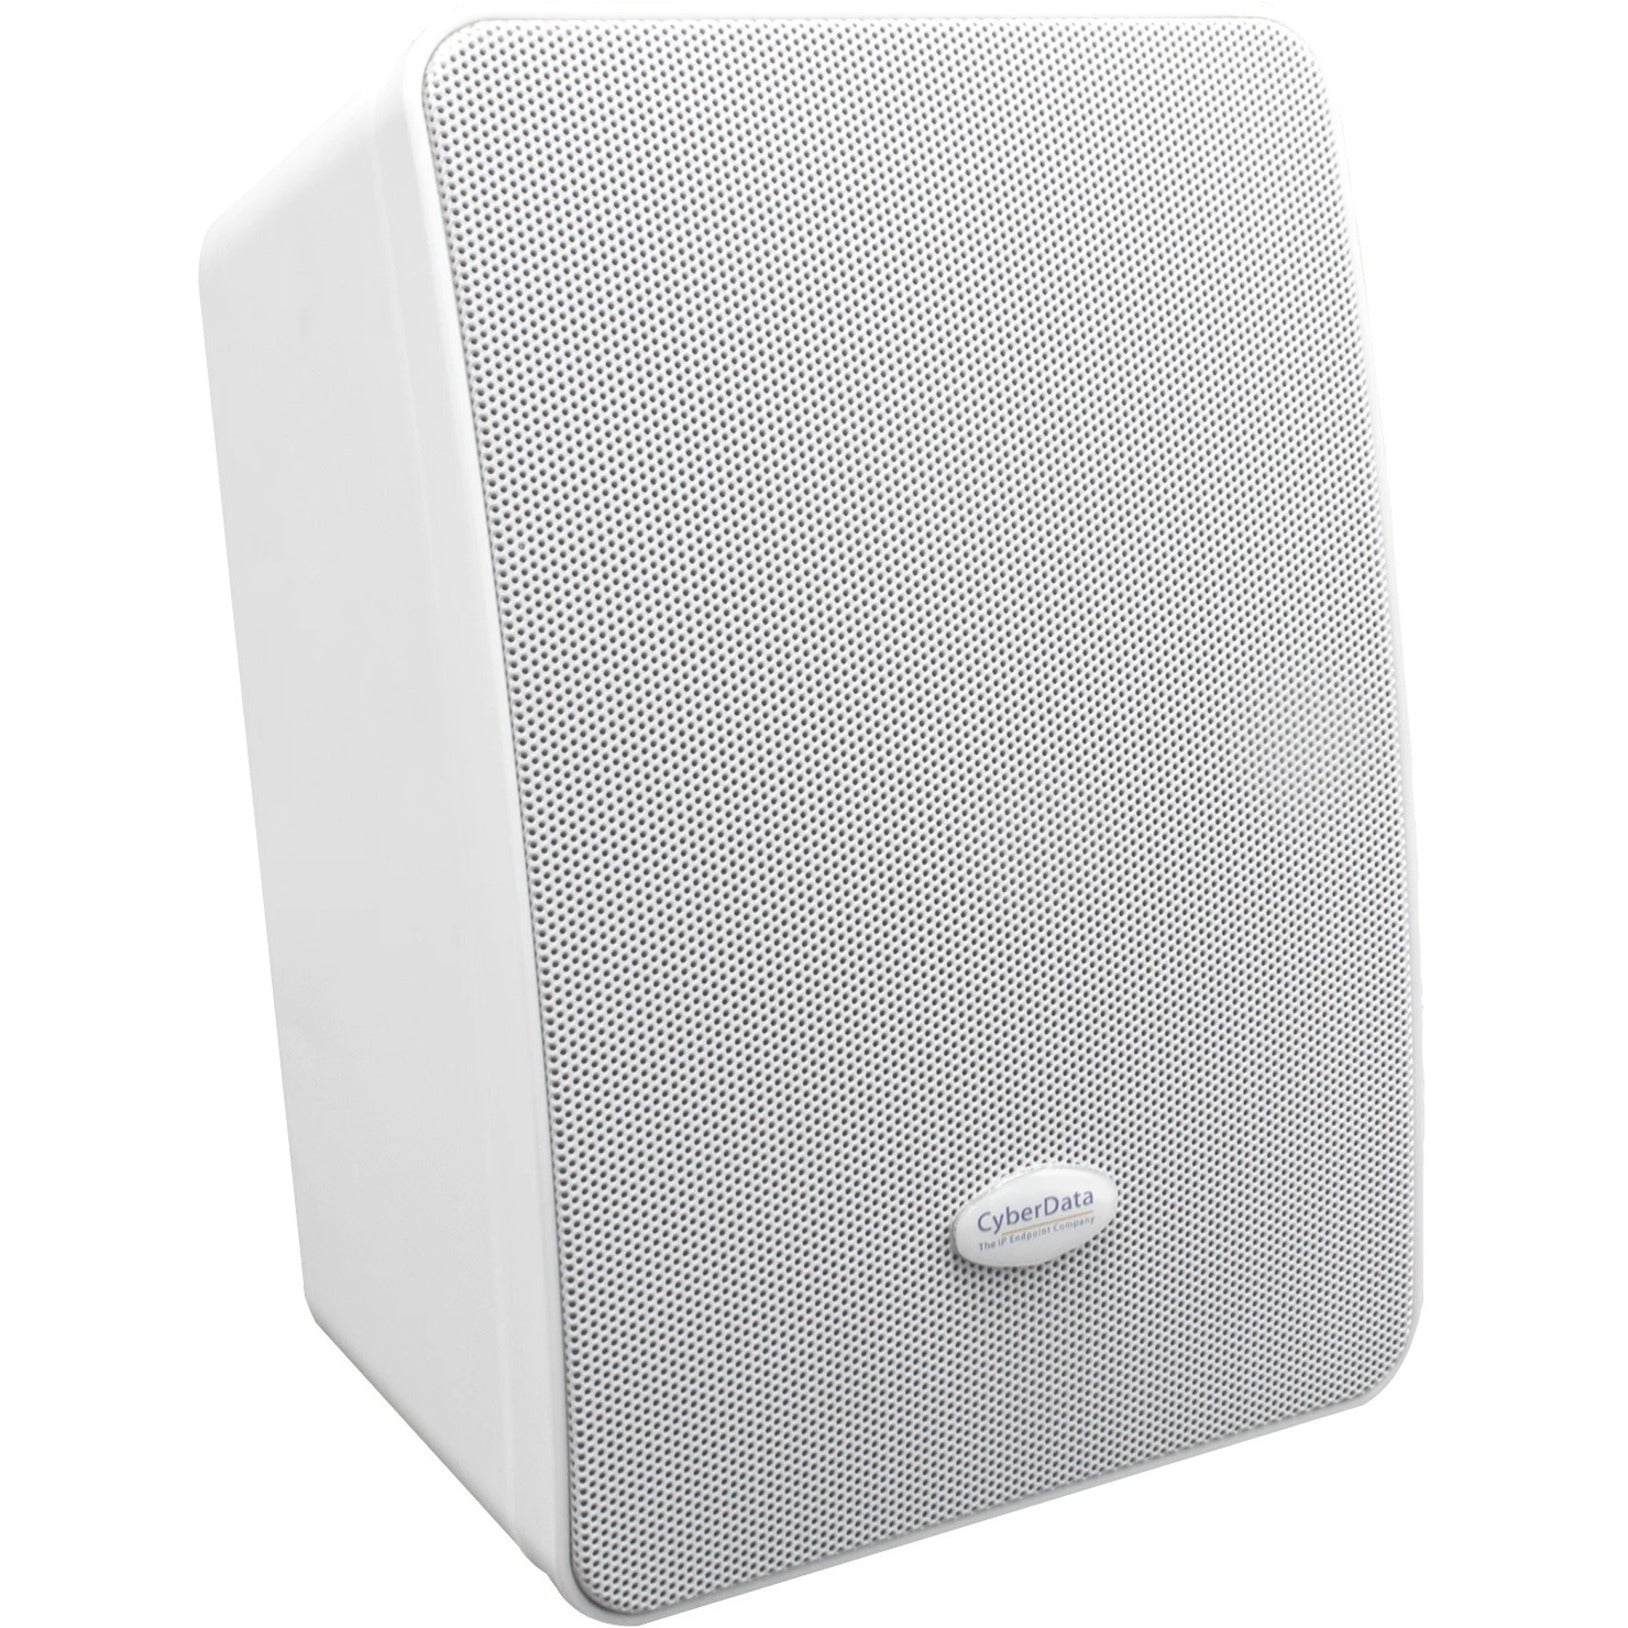 CyberData 011487 Multicast Wall Mount Speaker, White - 2 Year Warranty, RoHS Certified, 98 dB Sensitivity